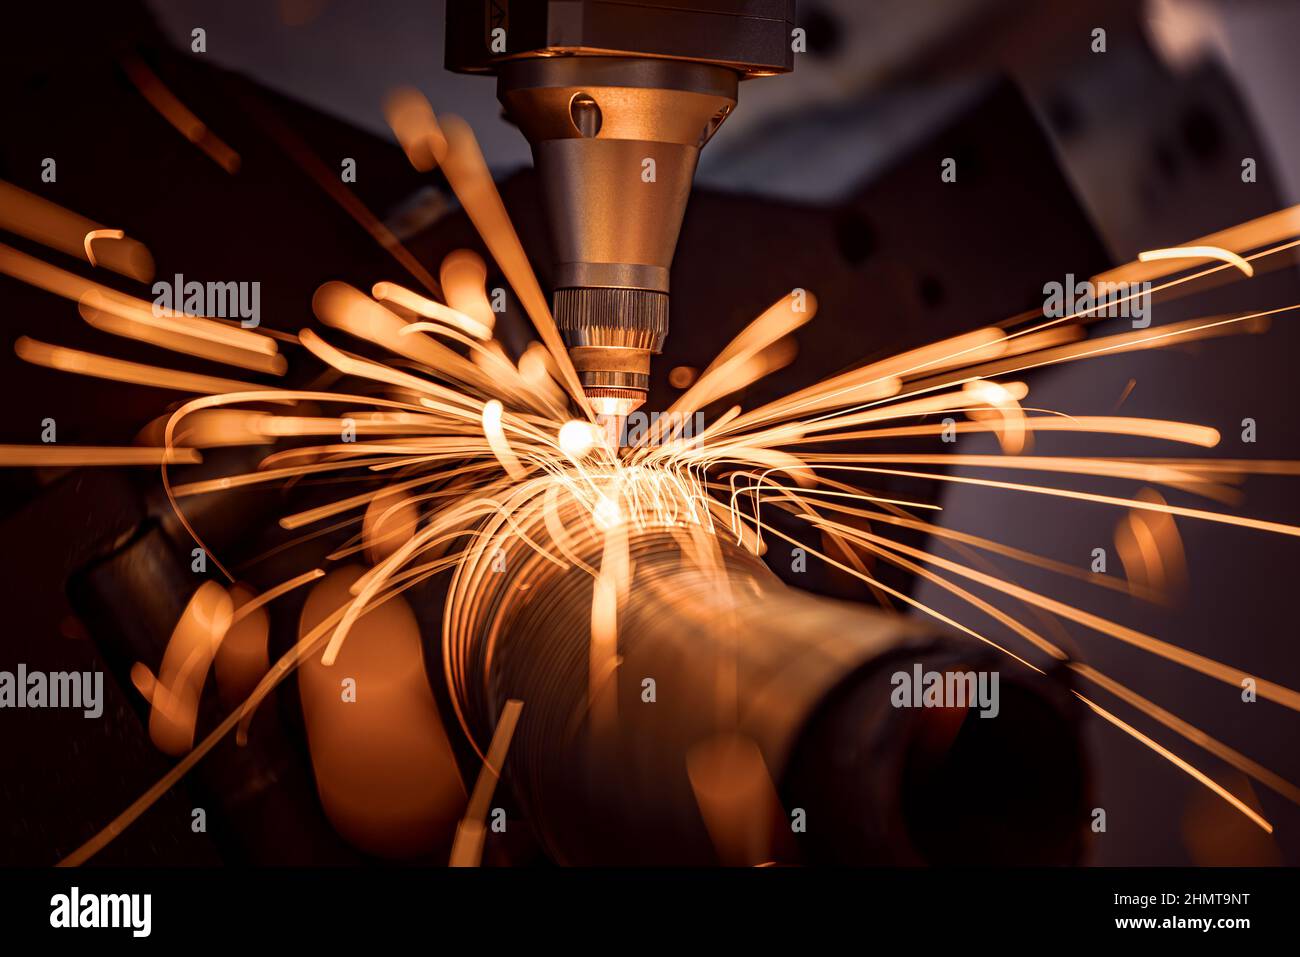 CNC découpe au laser du métal, technologie industrielle moderne fabrication de détails industriels. L'optique laser et la commande numérique par ordinateur (CNC) sont utilisées pour Banque D'Images